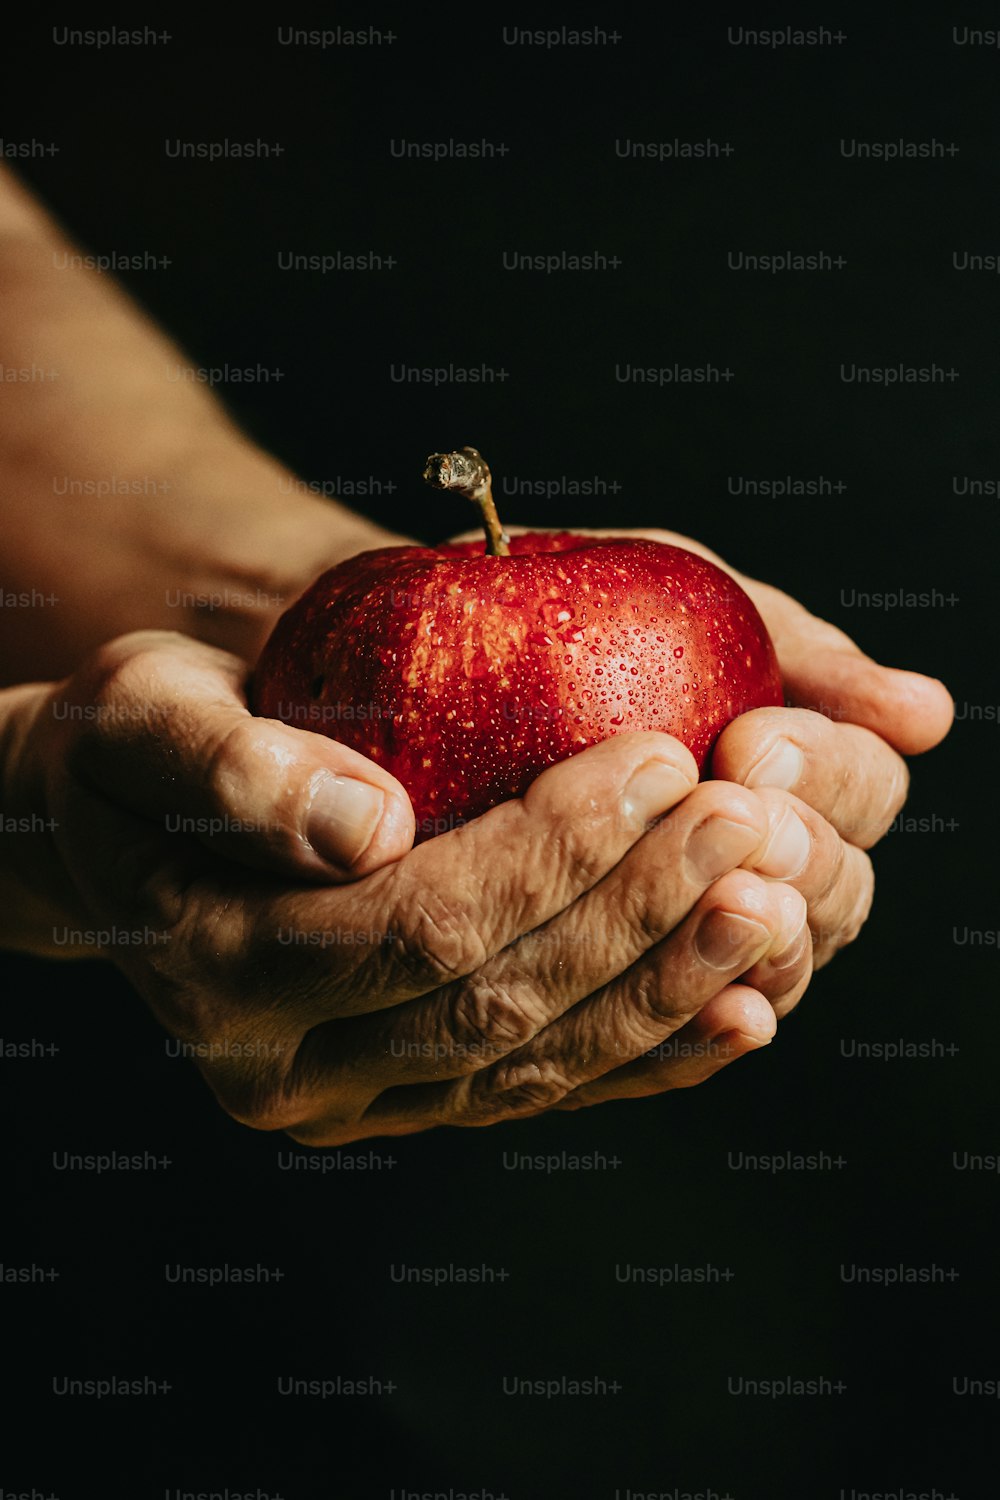 リンゴを手に持つ人